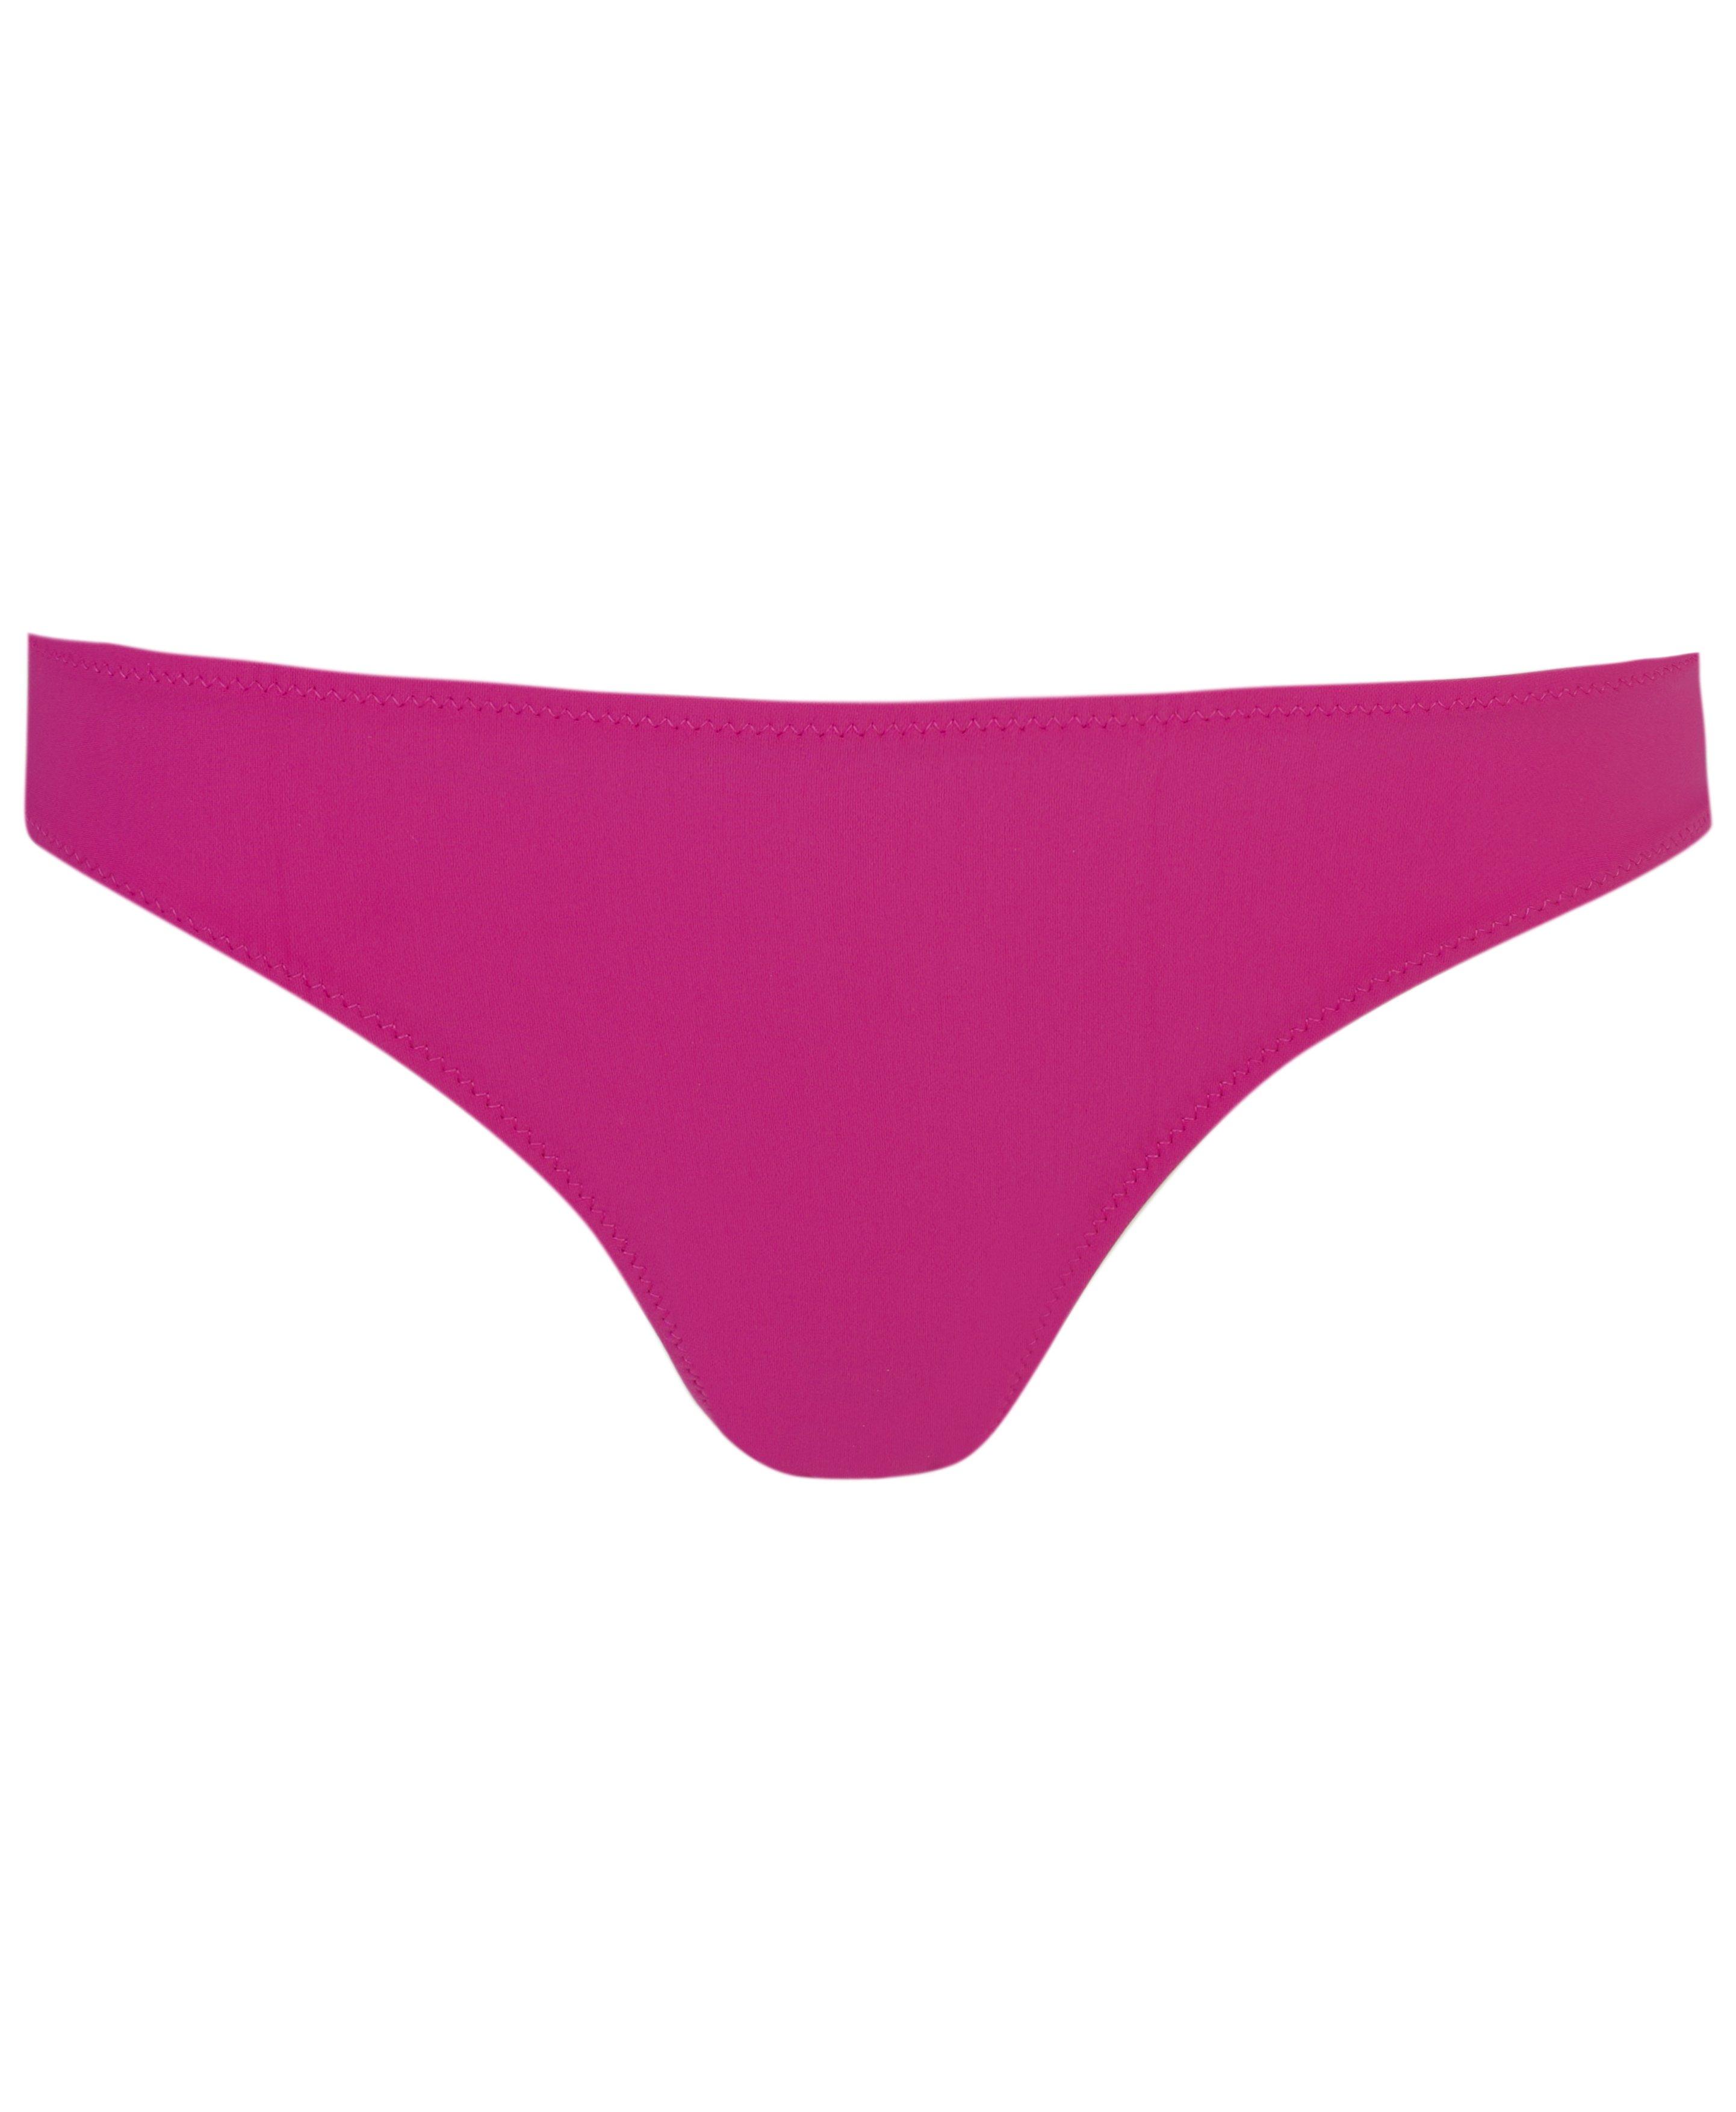 Sweaty Betty Peninsula Extra Life Bikini Top in Pink